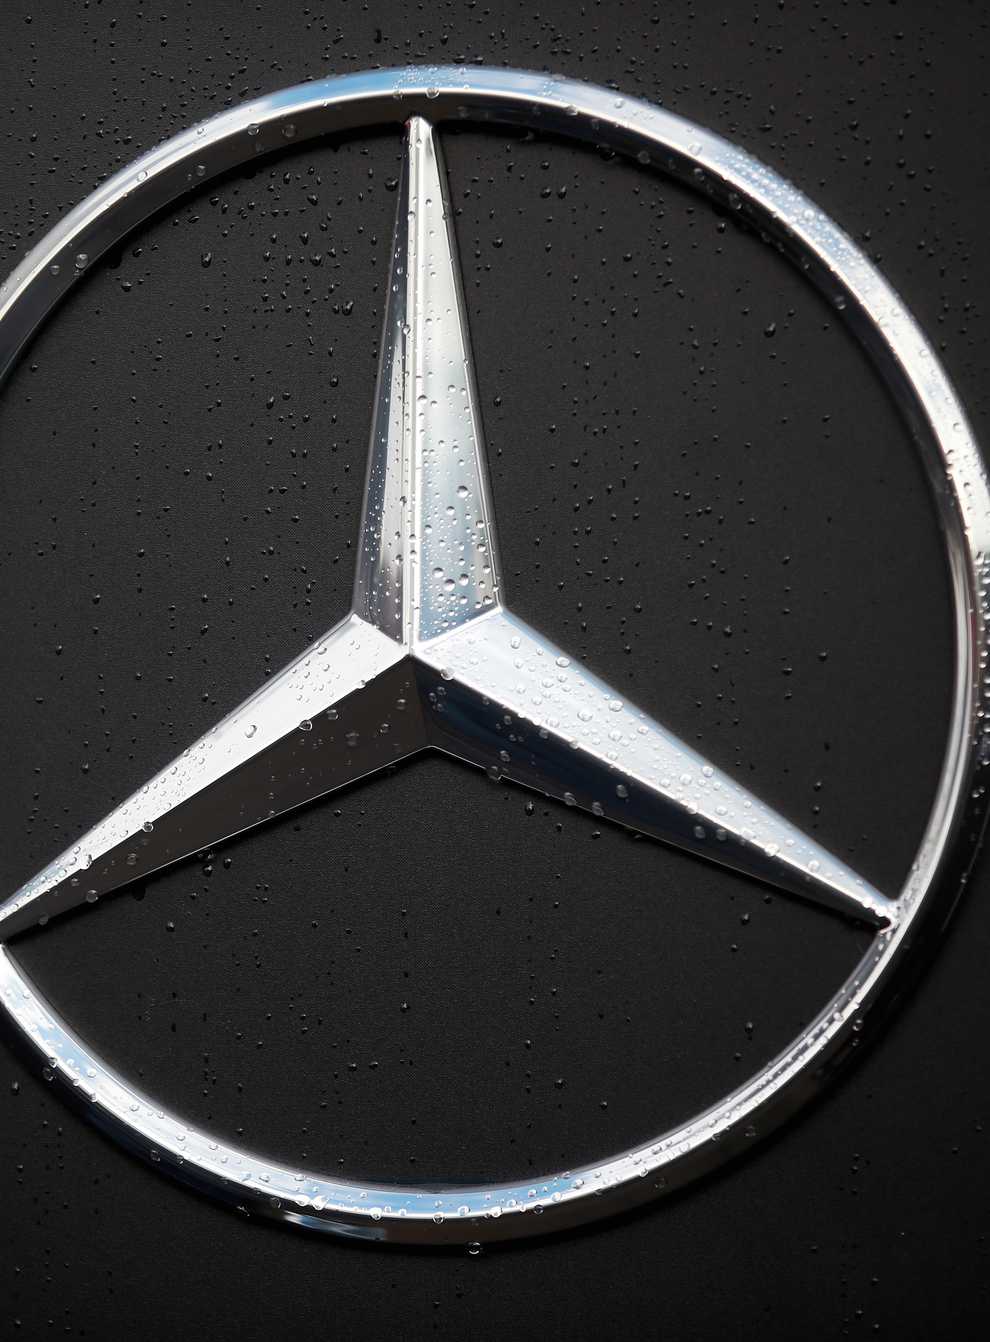 Mercedes-Benz logo (PA)